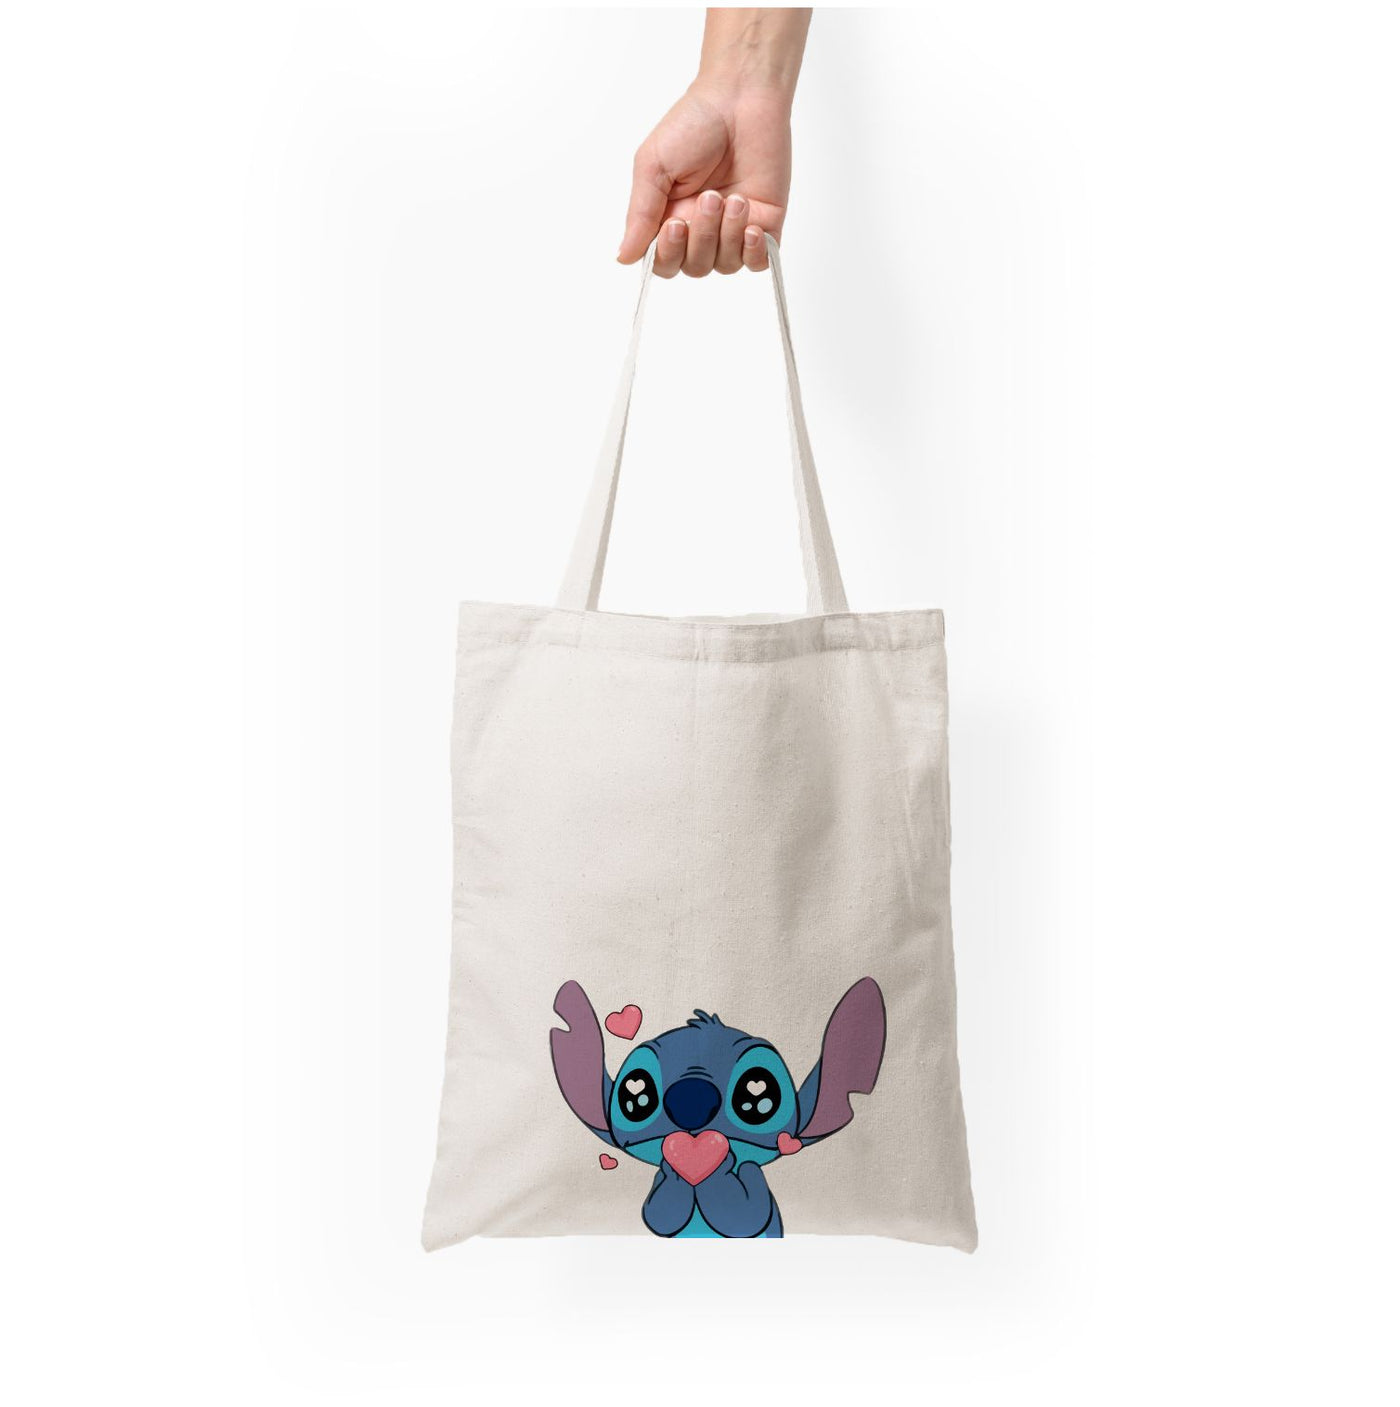 Cute Stitch - Disney Tote Bag